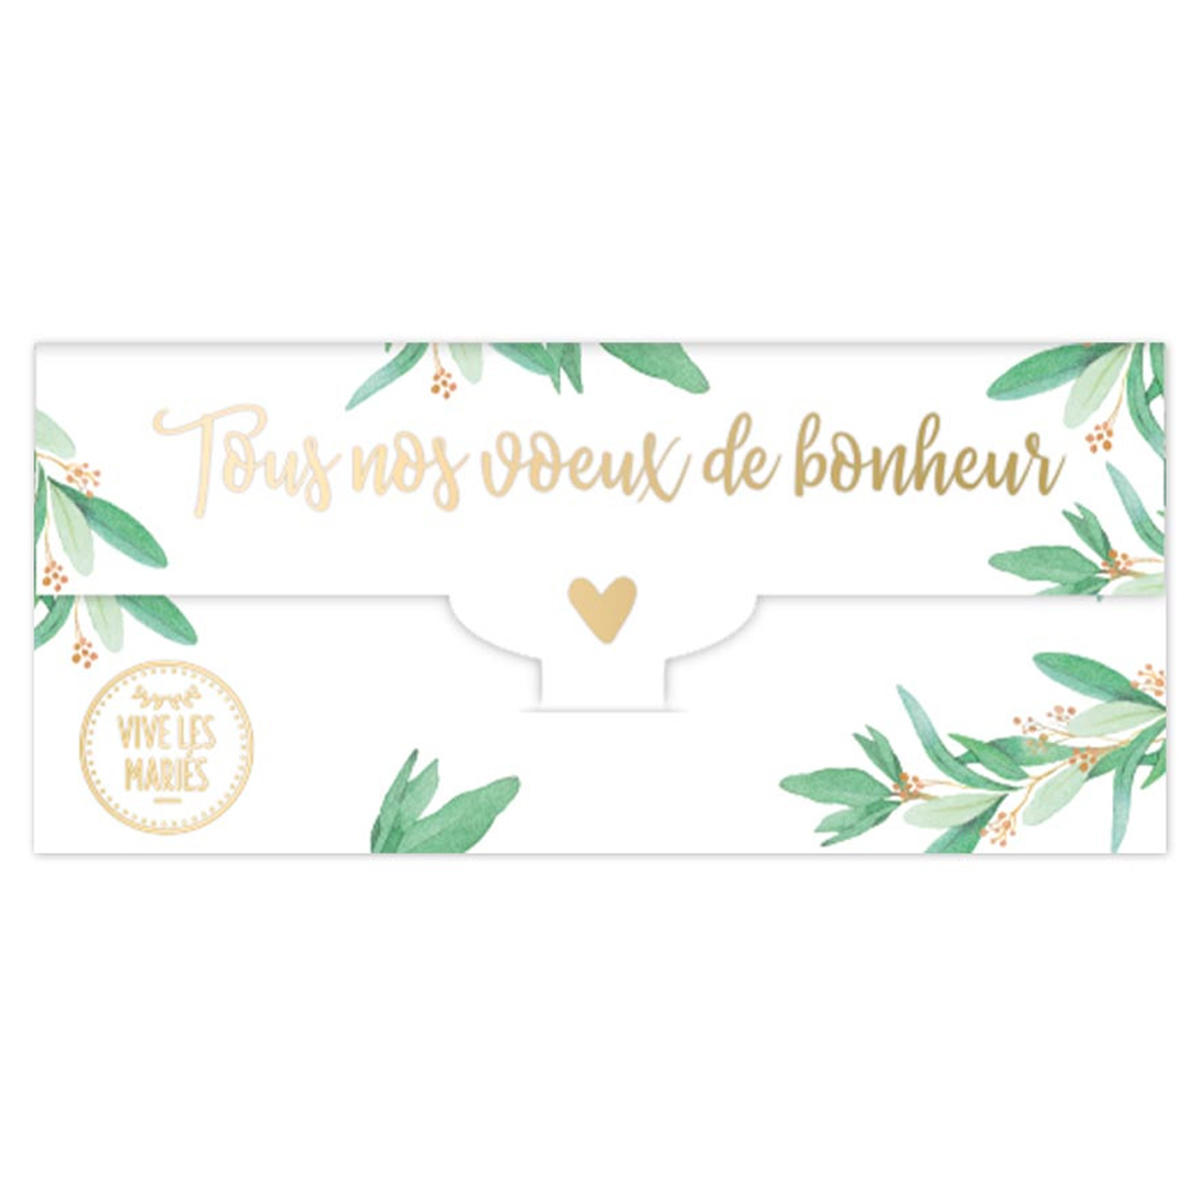 Enveloppe carte de voeux \'Mariage - Vive les Mariés\' (tous nos voeux de Bonheur) - 20x10 cm - [R6713]